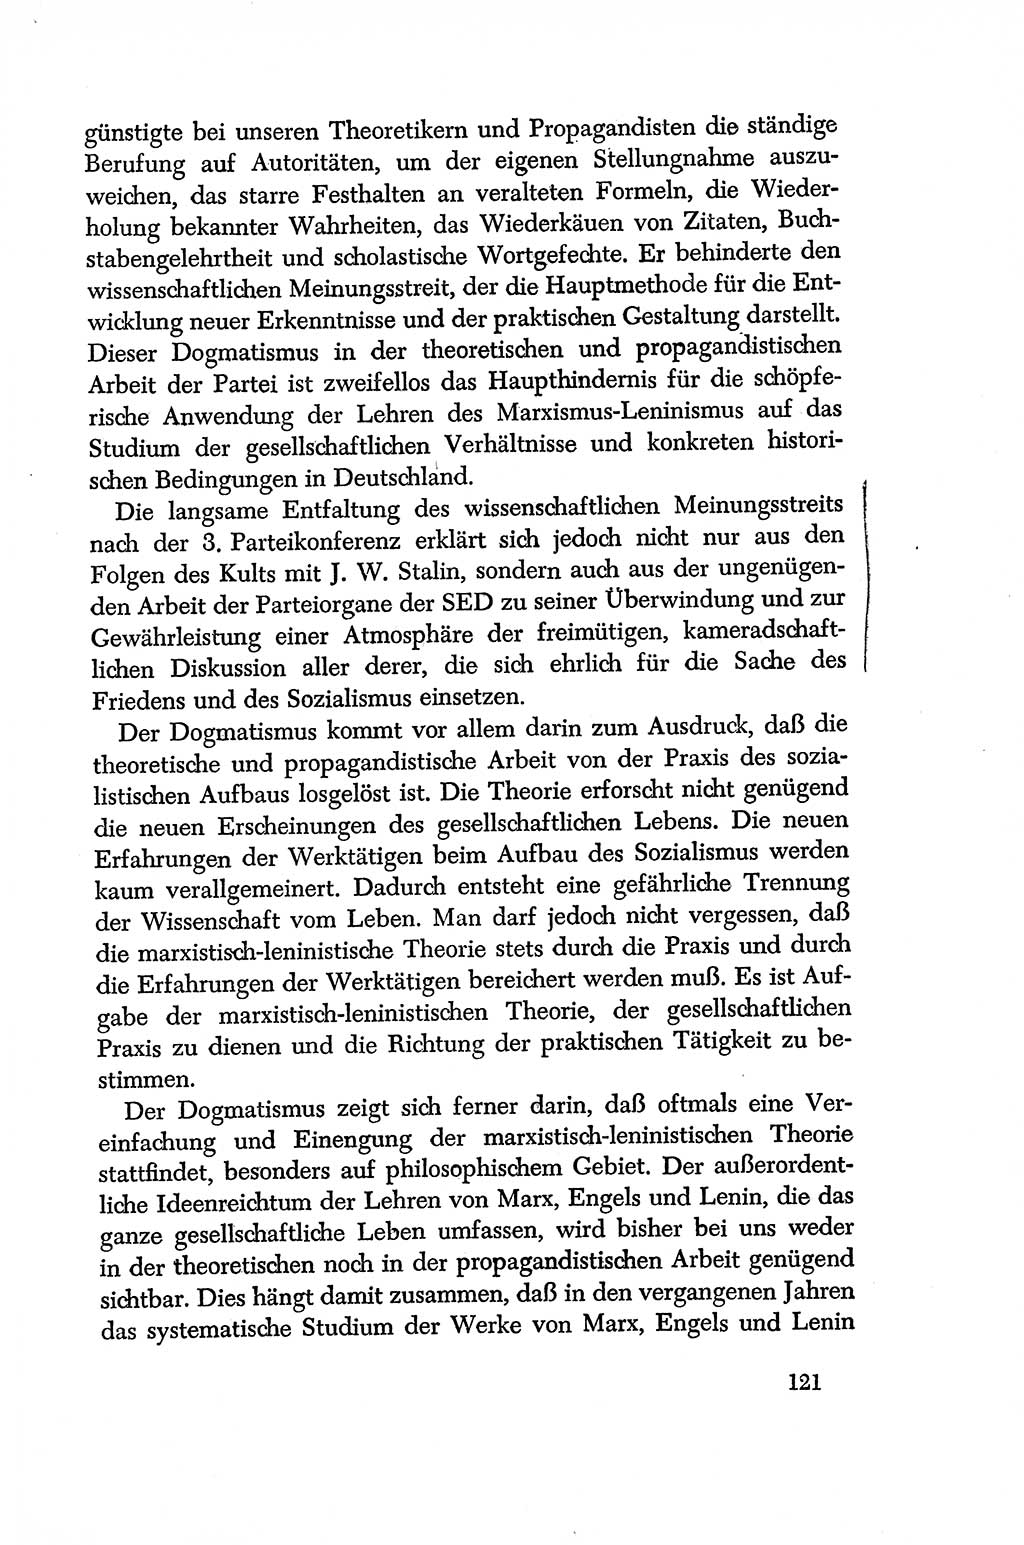 Dokumente der Sozialistischen Einheitspartei Deutschlands (SED) [Deutsche Demokratische Republik (DDR)] 1956-1957, Seite 121 (Dok. SED DDR 1956-1957, S. 121)